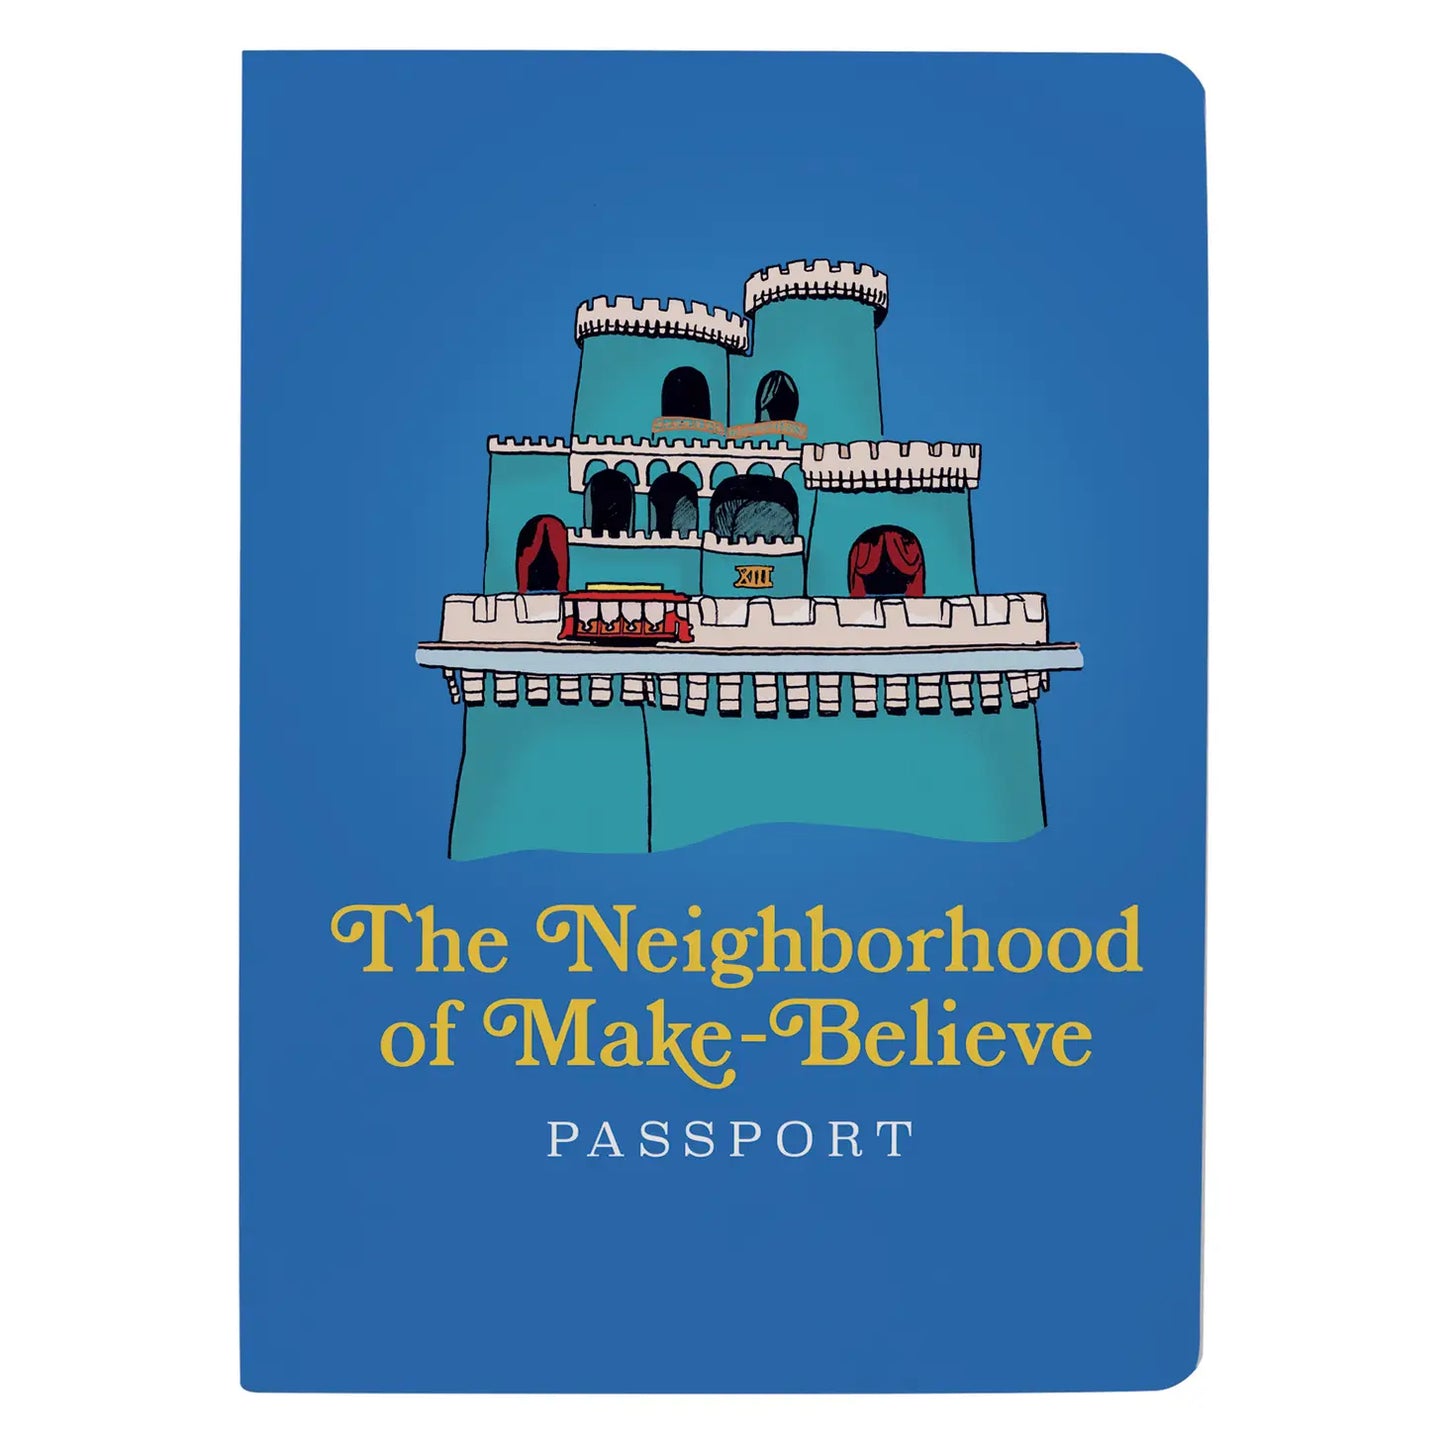 The Neighborhood of Make-Believe